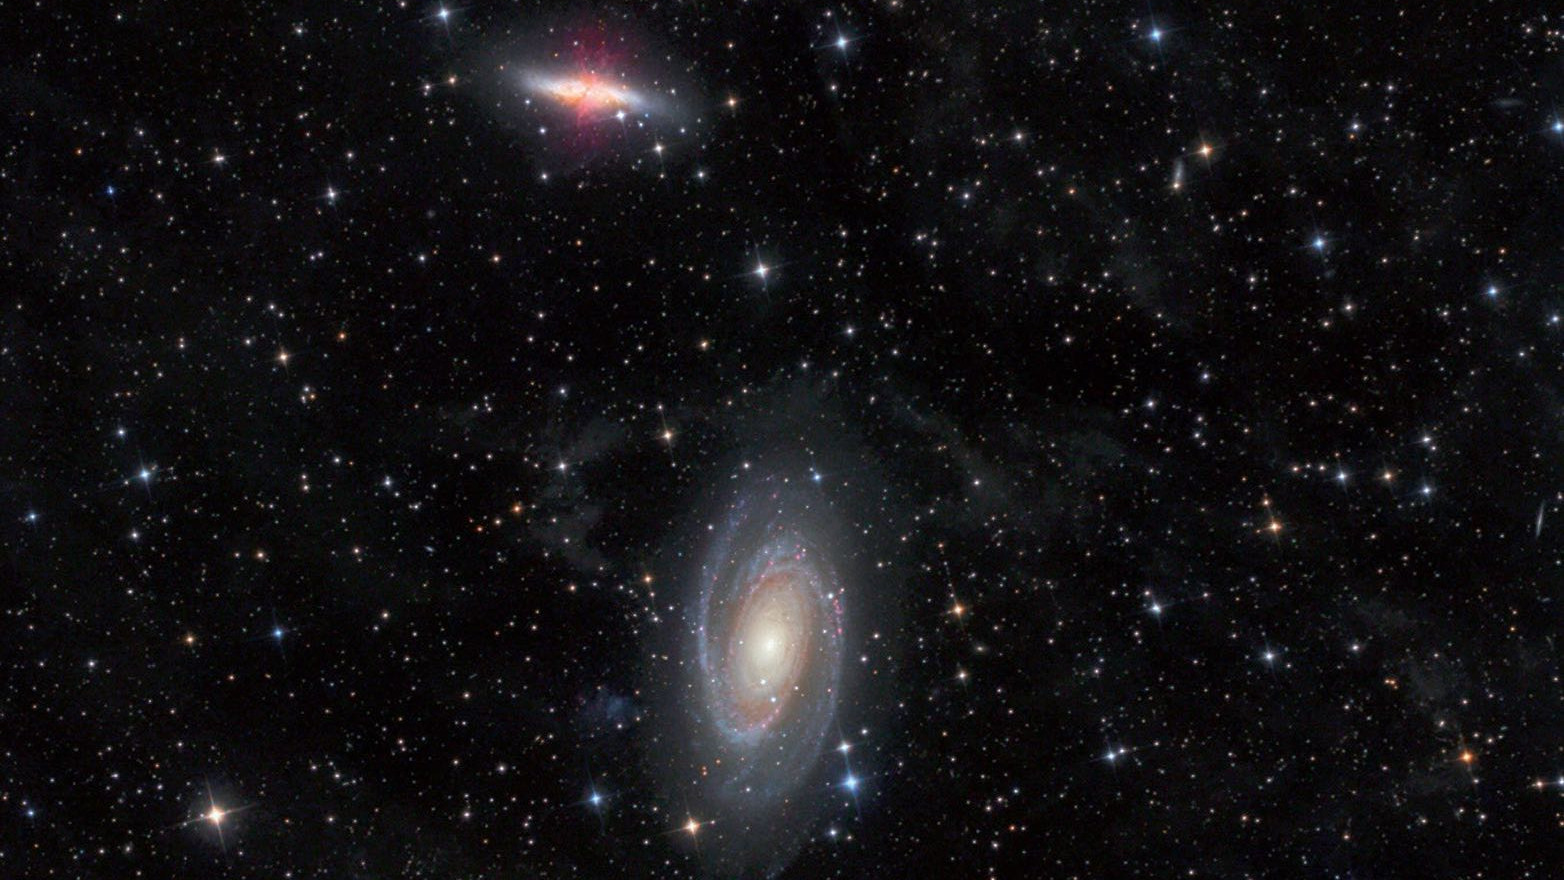 Les galaxies M 81 et M 82, dans la constellation de la Grande Ourse, photographiées avec un télescope Newton de 4,5 pouces, à une distance focale de 440 mm. Michael Deger / CCD Guide